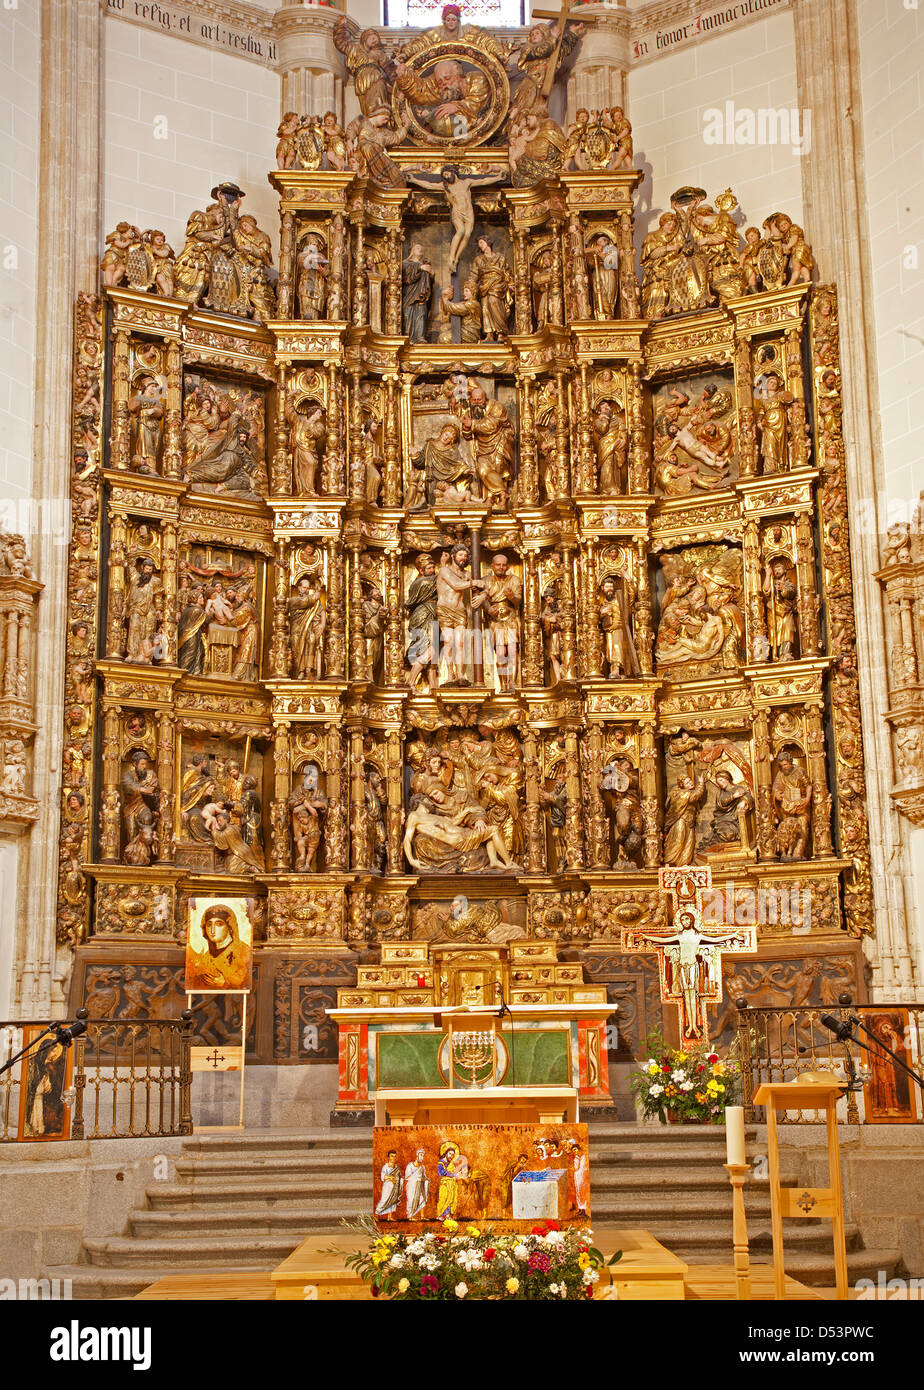 MADRID - März 10: Renaissance geschnitzt und polychrome Altar der Capilla del Obispo von Francisco Giralte (1500-1576) Stockfoto